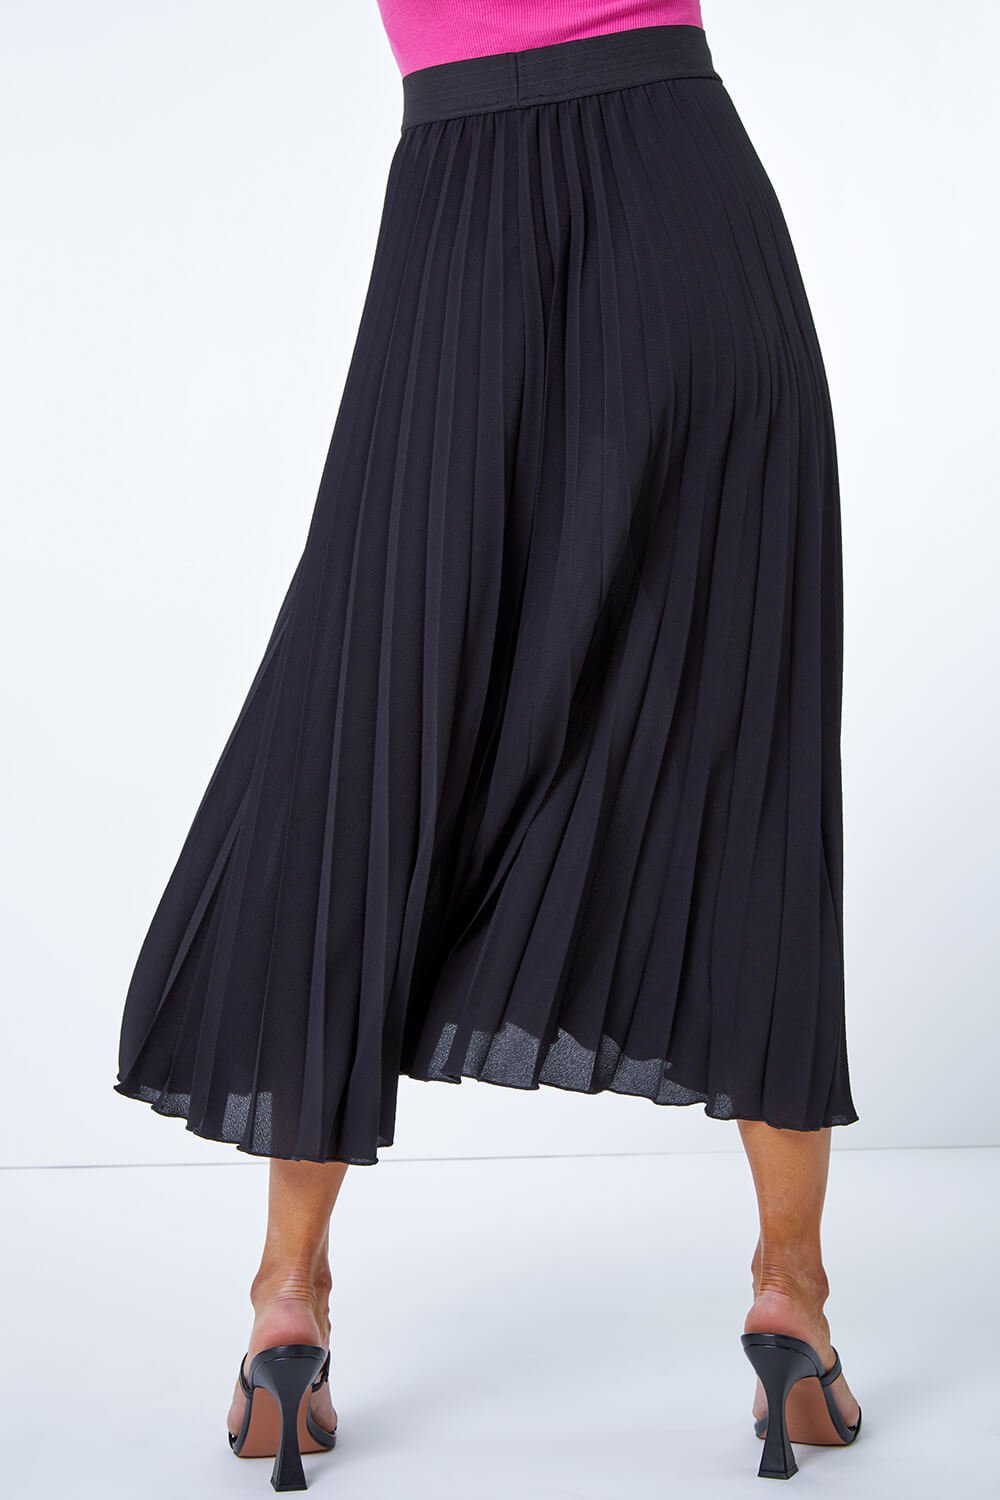 Petite Pleated Maxi Skirt in Black - Roman Originals UK